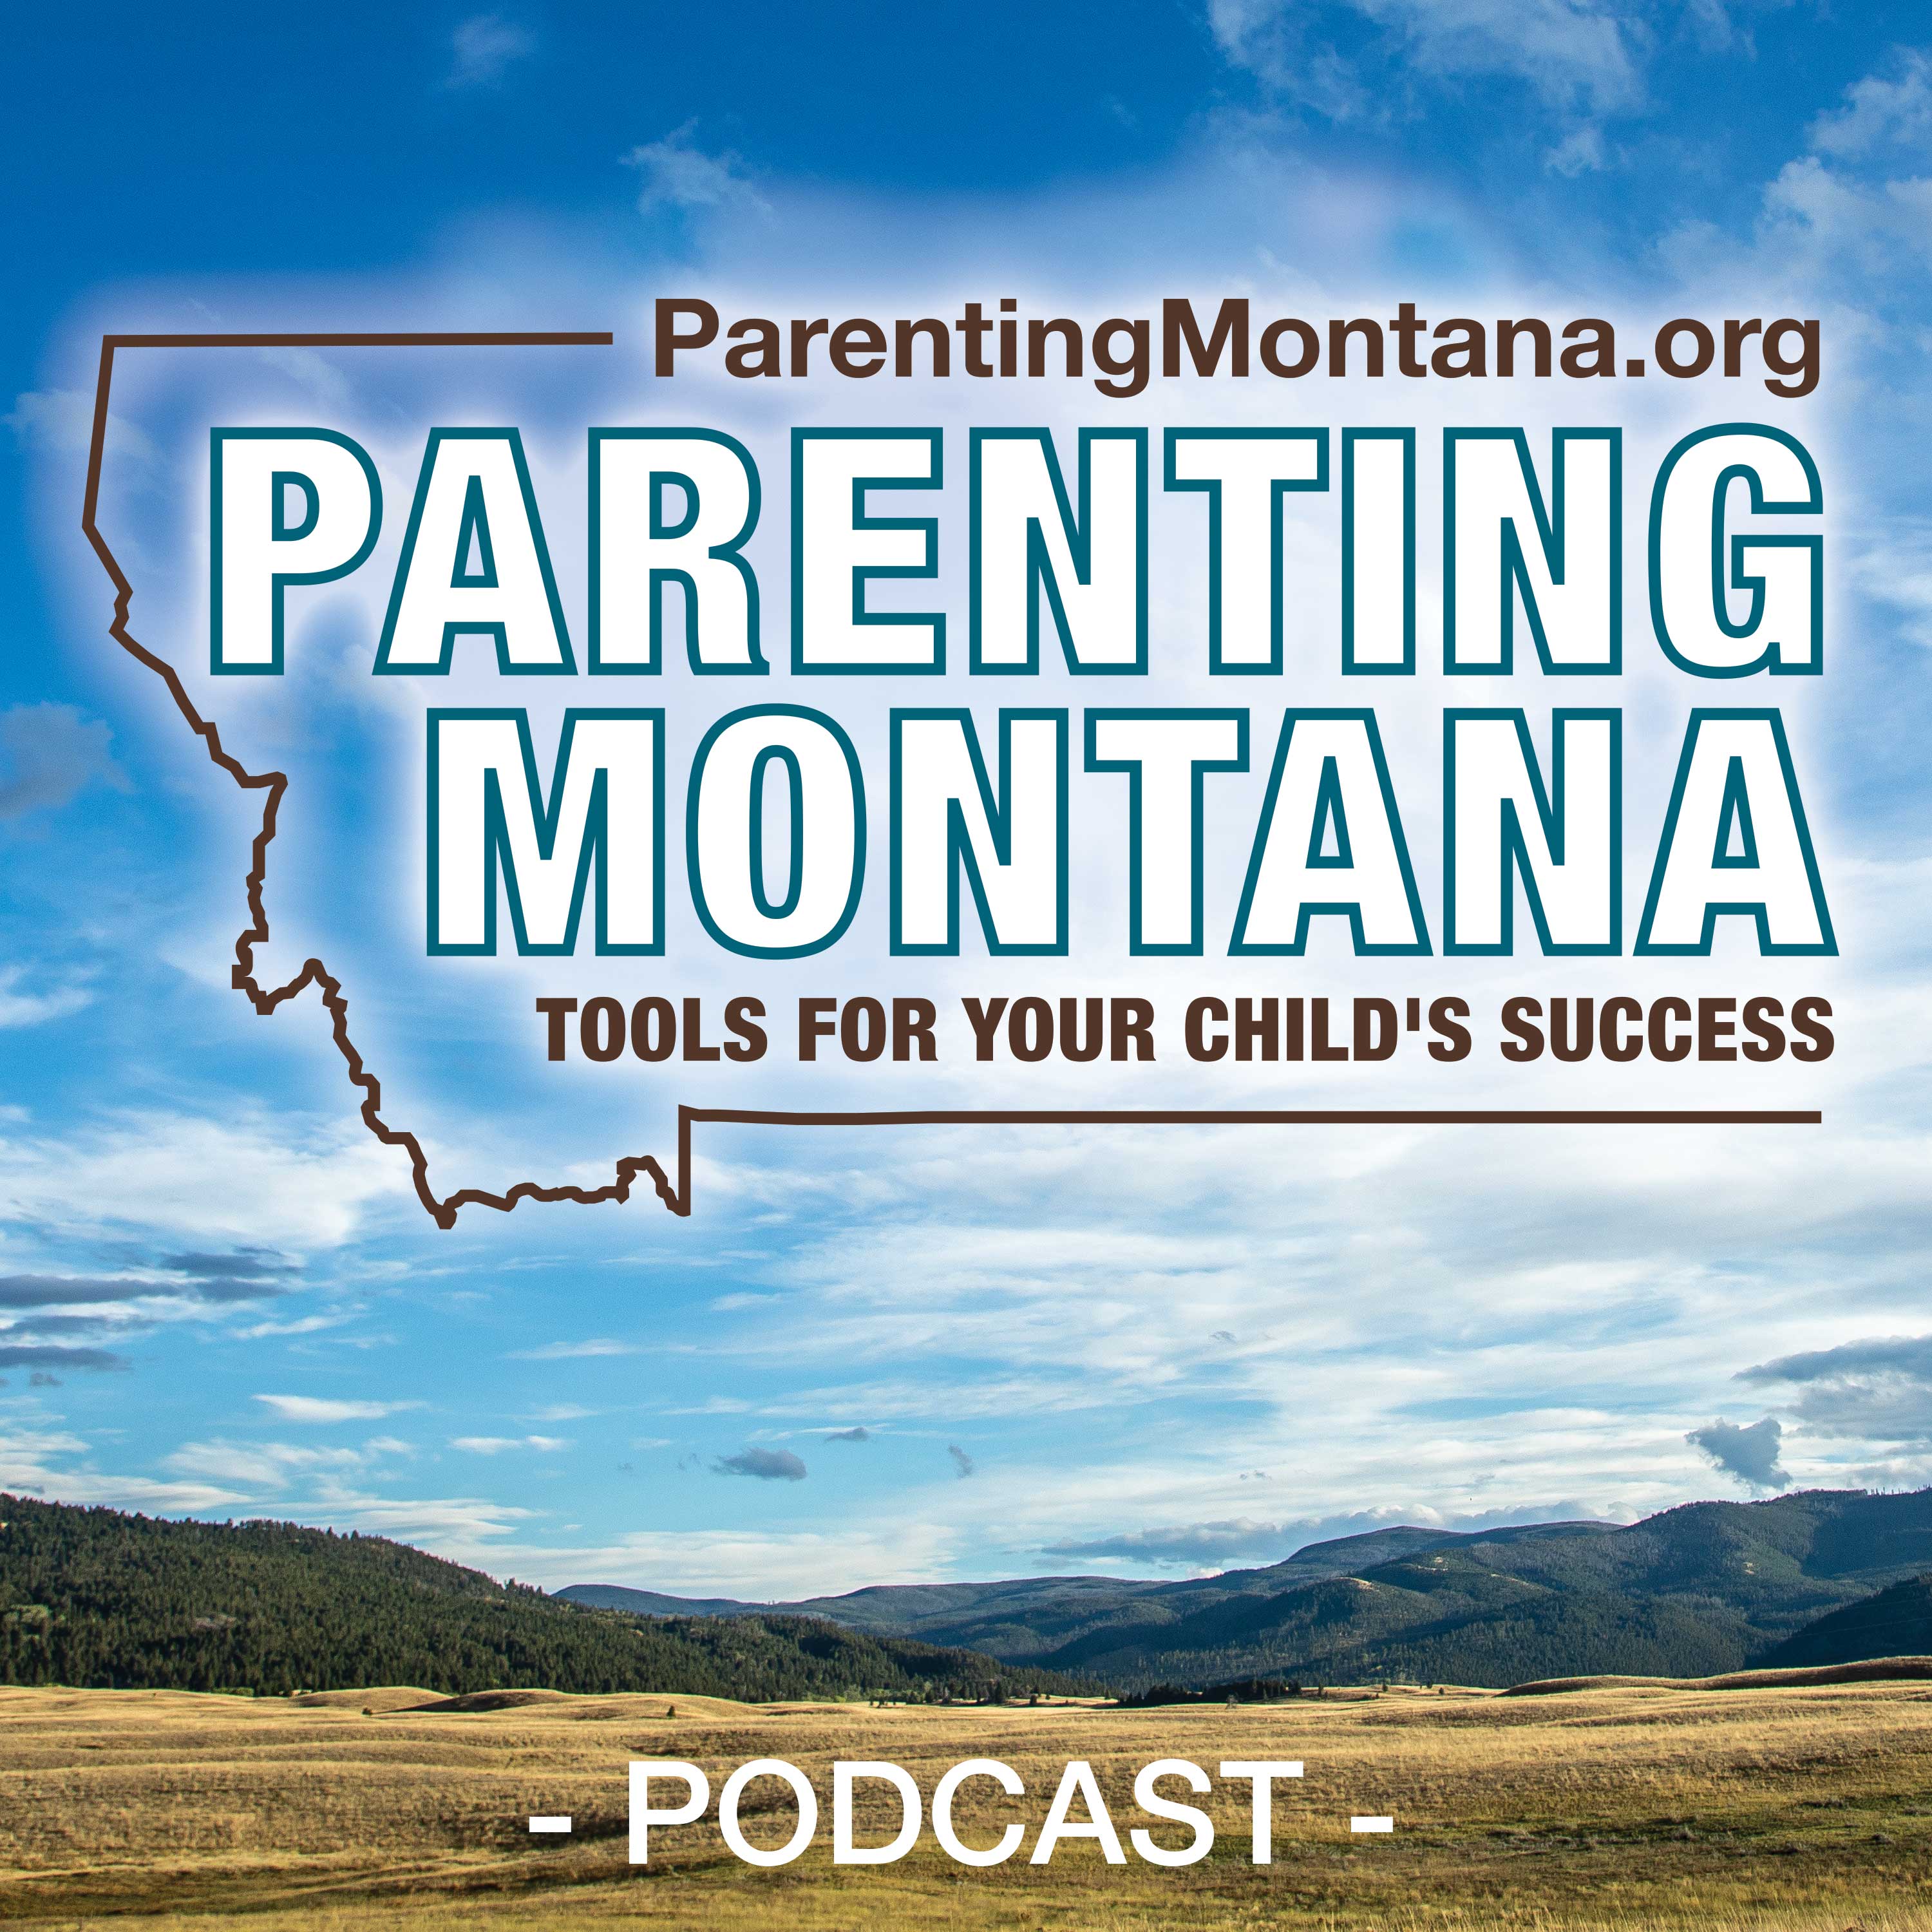 Artwork for podcast Parenting Montana